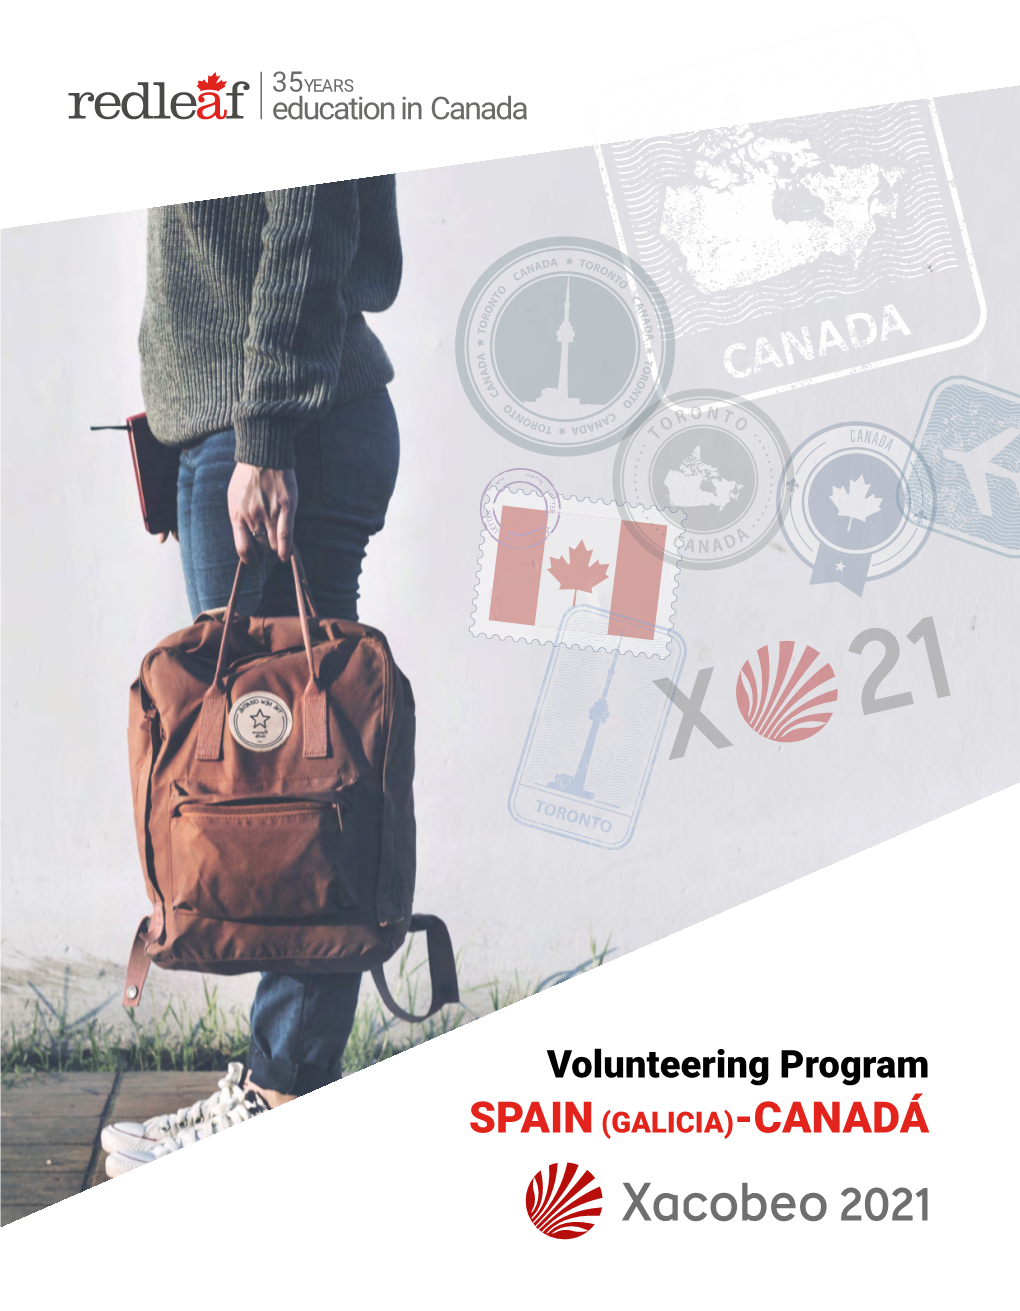 Volunteering Program SPAIN (GALICIA)-CANADÁ 35 YEARS 01 Volunteering Program - GALICIA-CANADÁ the Canada - Spain Table of Contents Volunteering Program INDEX